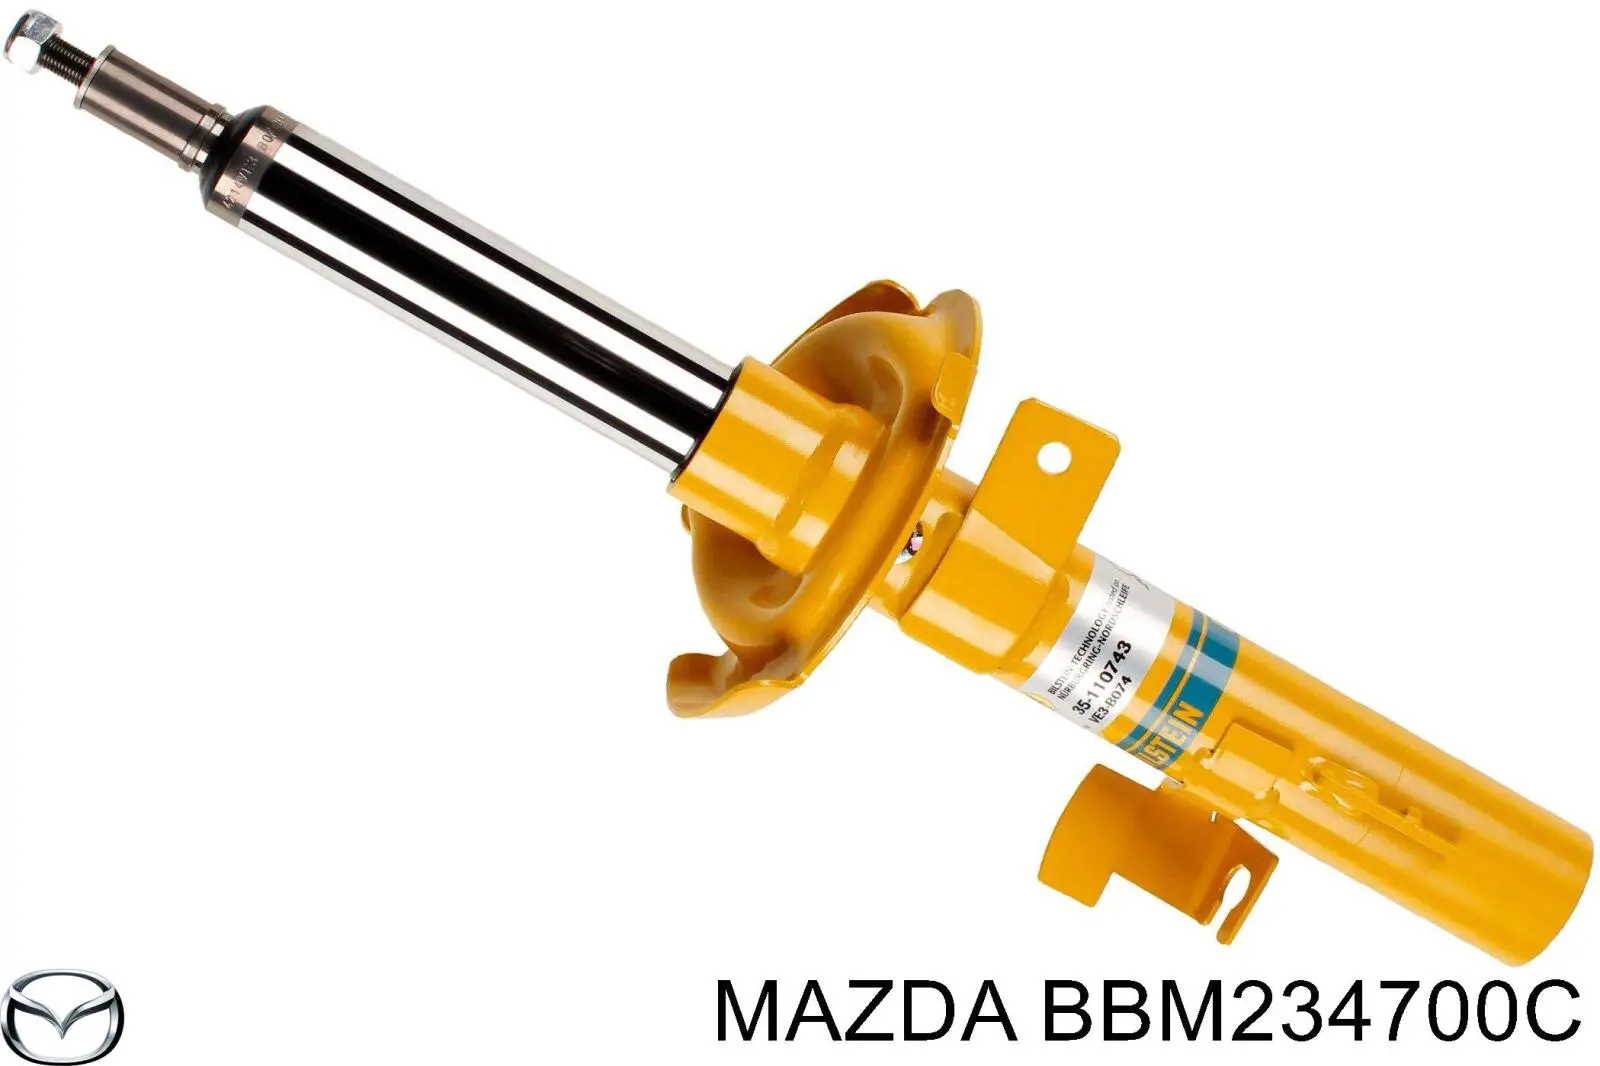 BBM234700C Mazda amortiguador delantero derecho